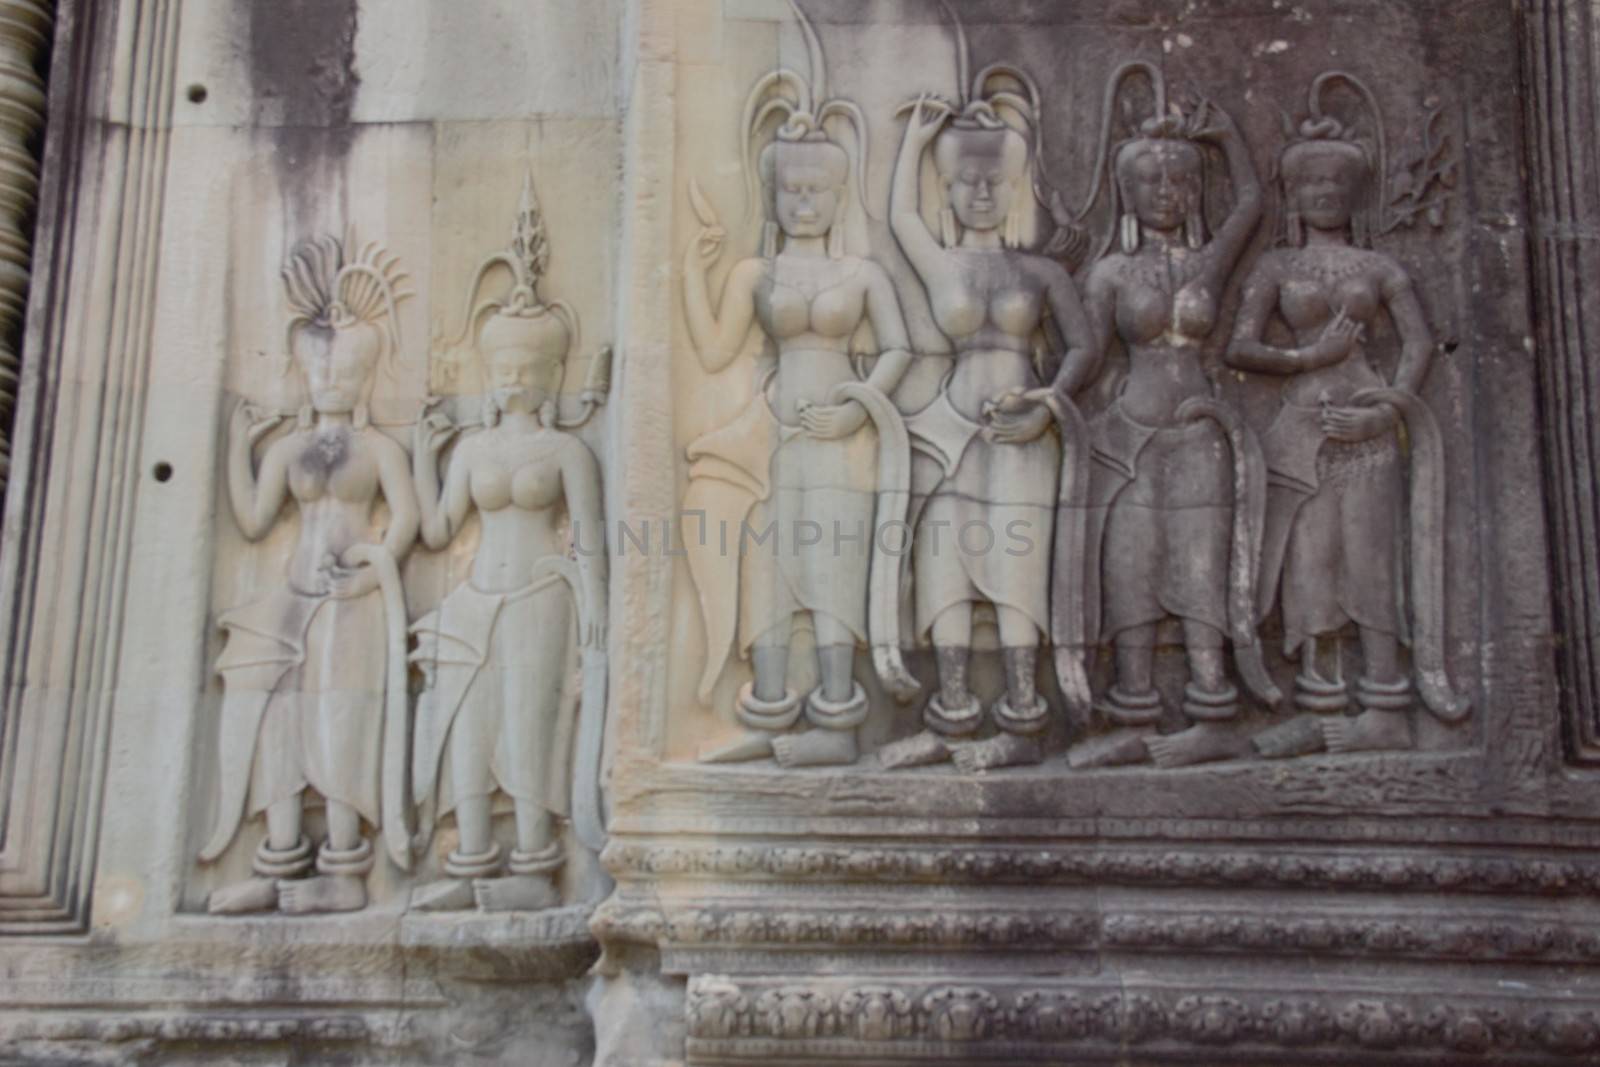 Apsara dancer girl dancing carving in stone at angkor wat temple cambodia siem reap siam